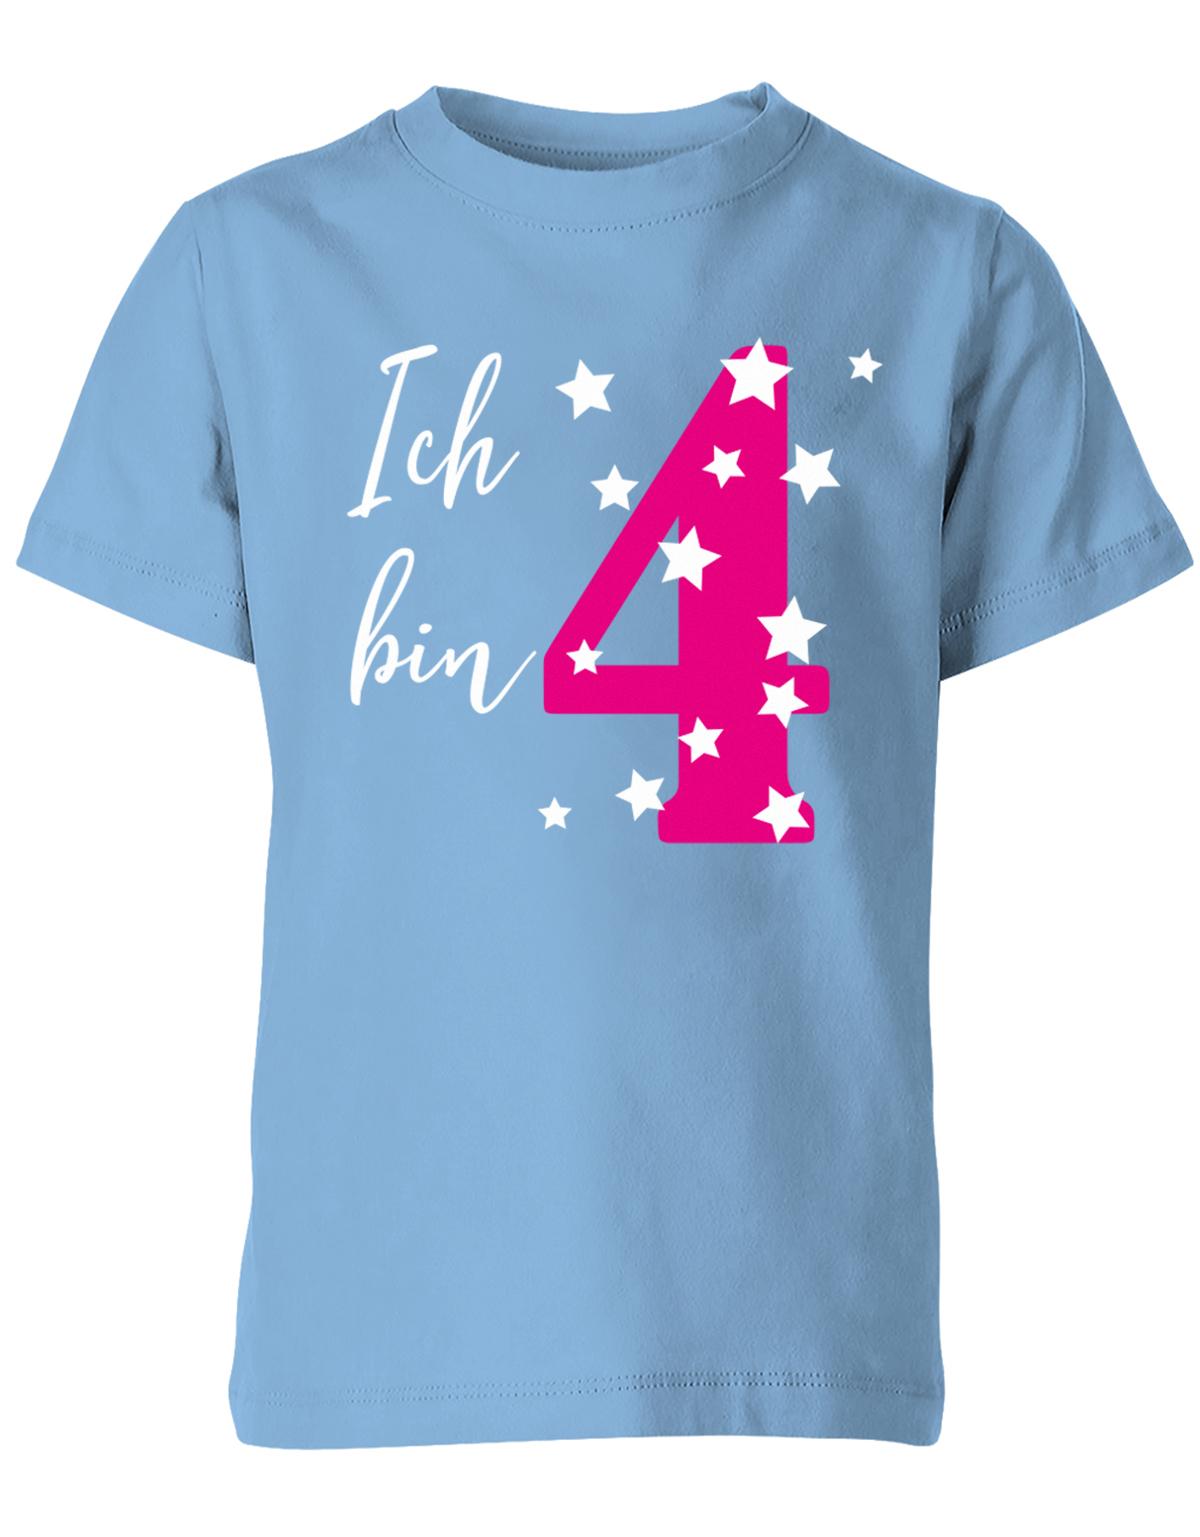 ich-bin-4-sterne-sternchen-geburtstag-kinder-shirt-hellblau